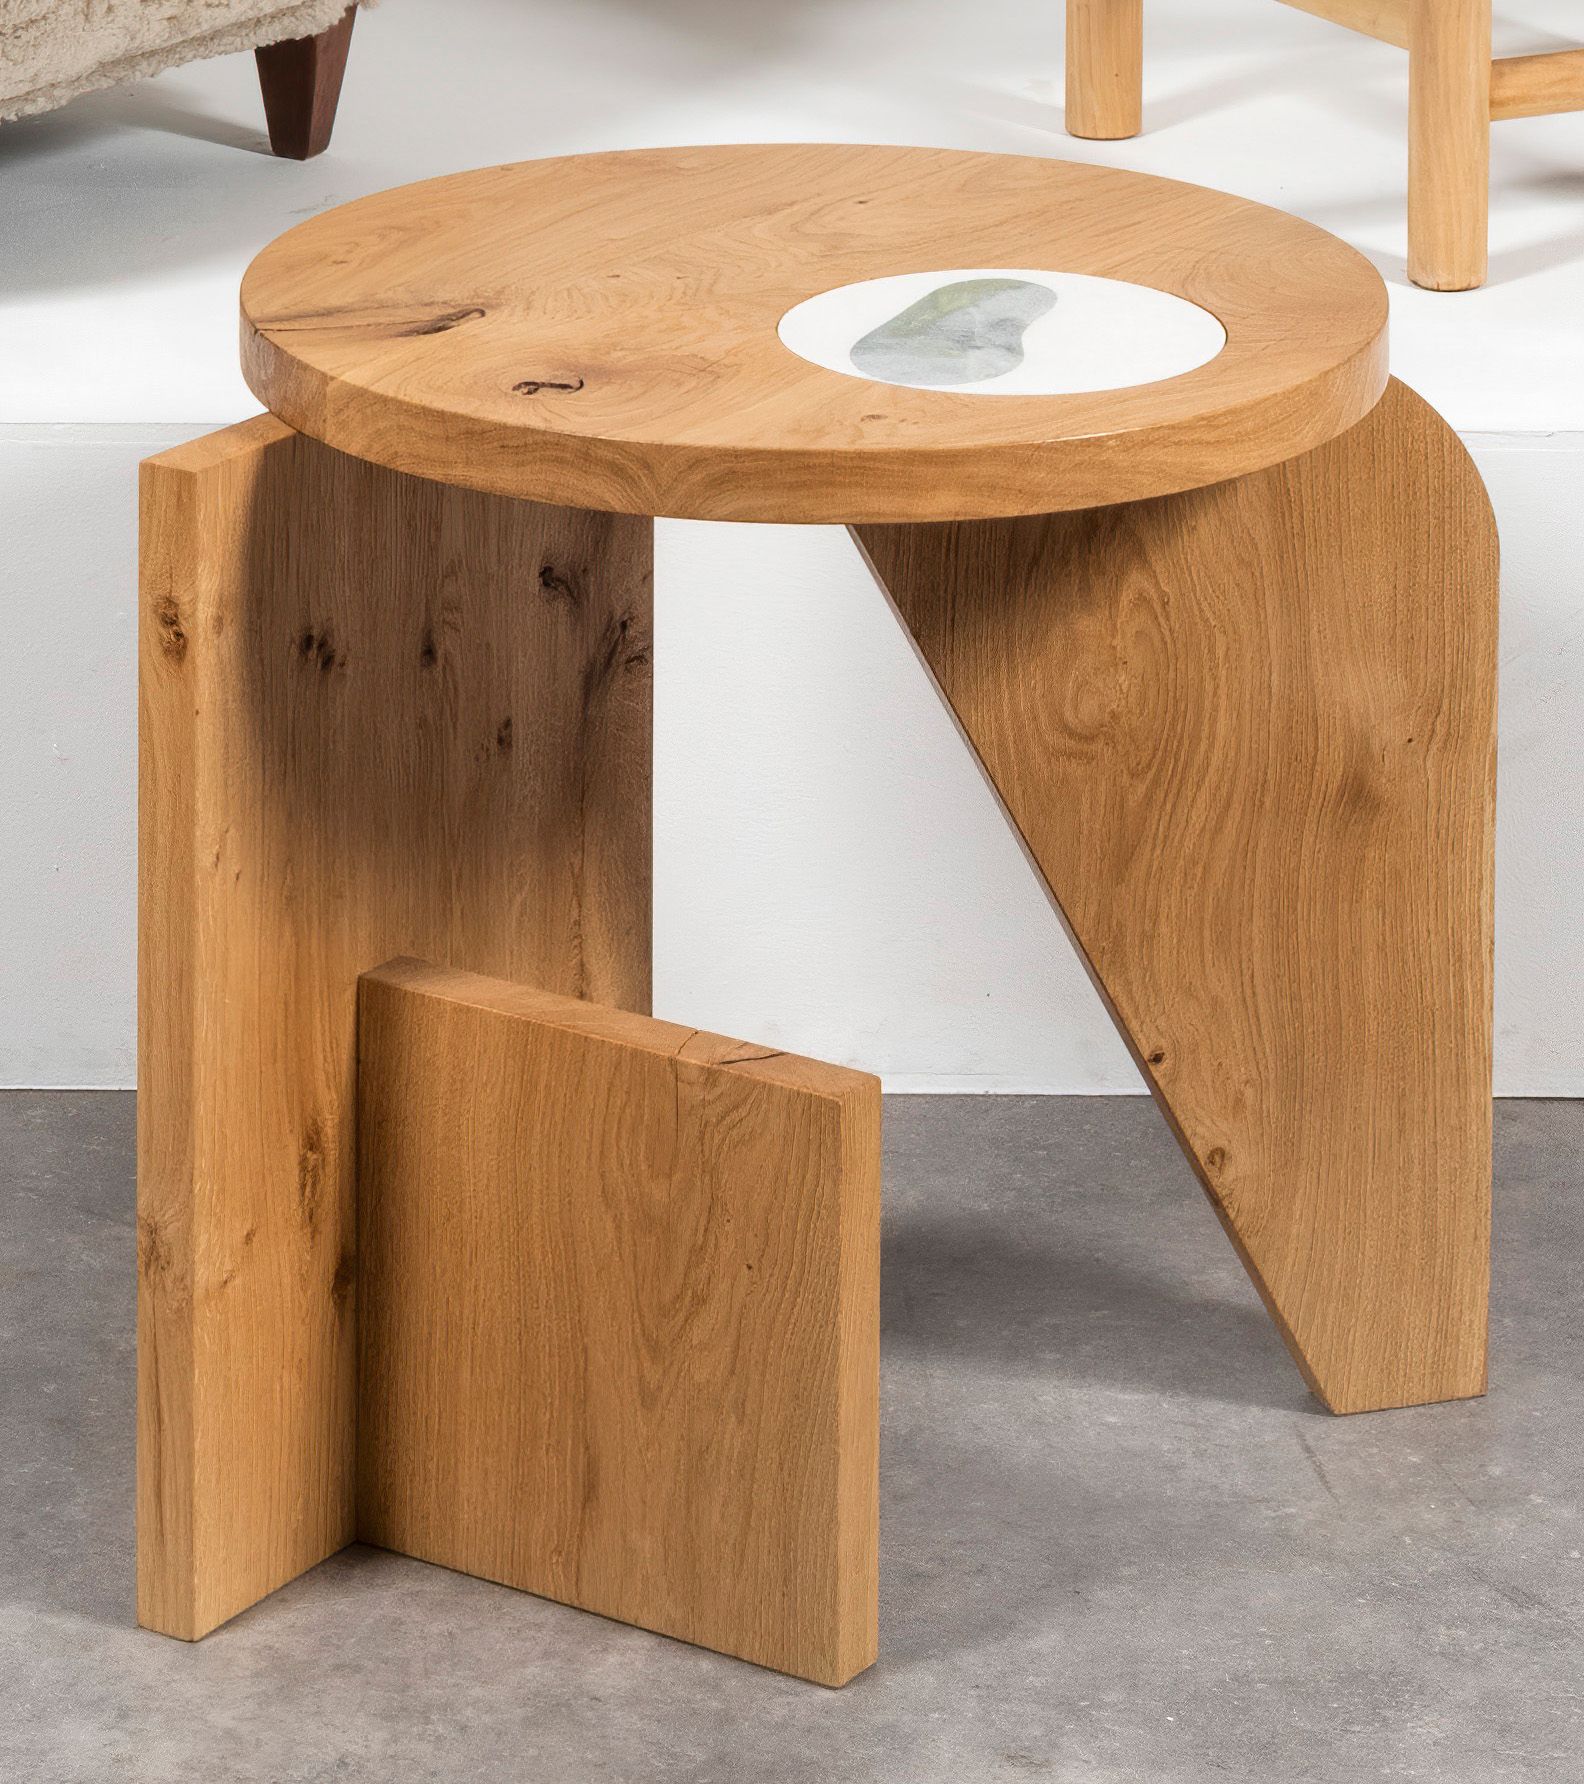 SEBASTIEN CAPORUSO AR Σ
Mod. Table
Guéridon
Structure en chêne et marbre sur le &hellip;